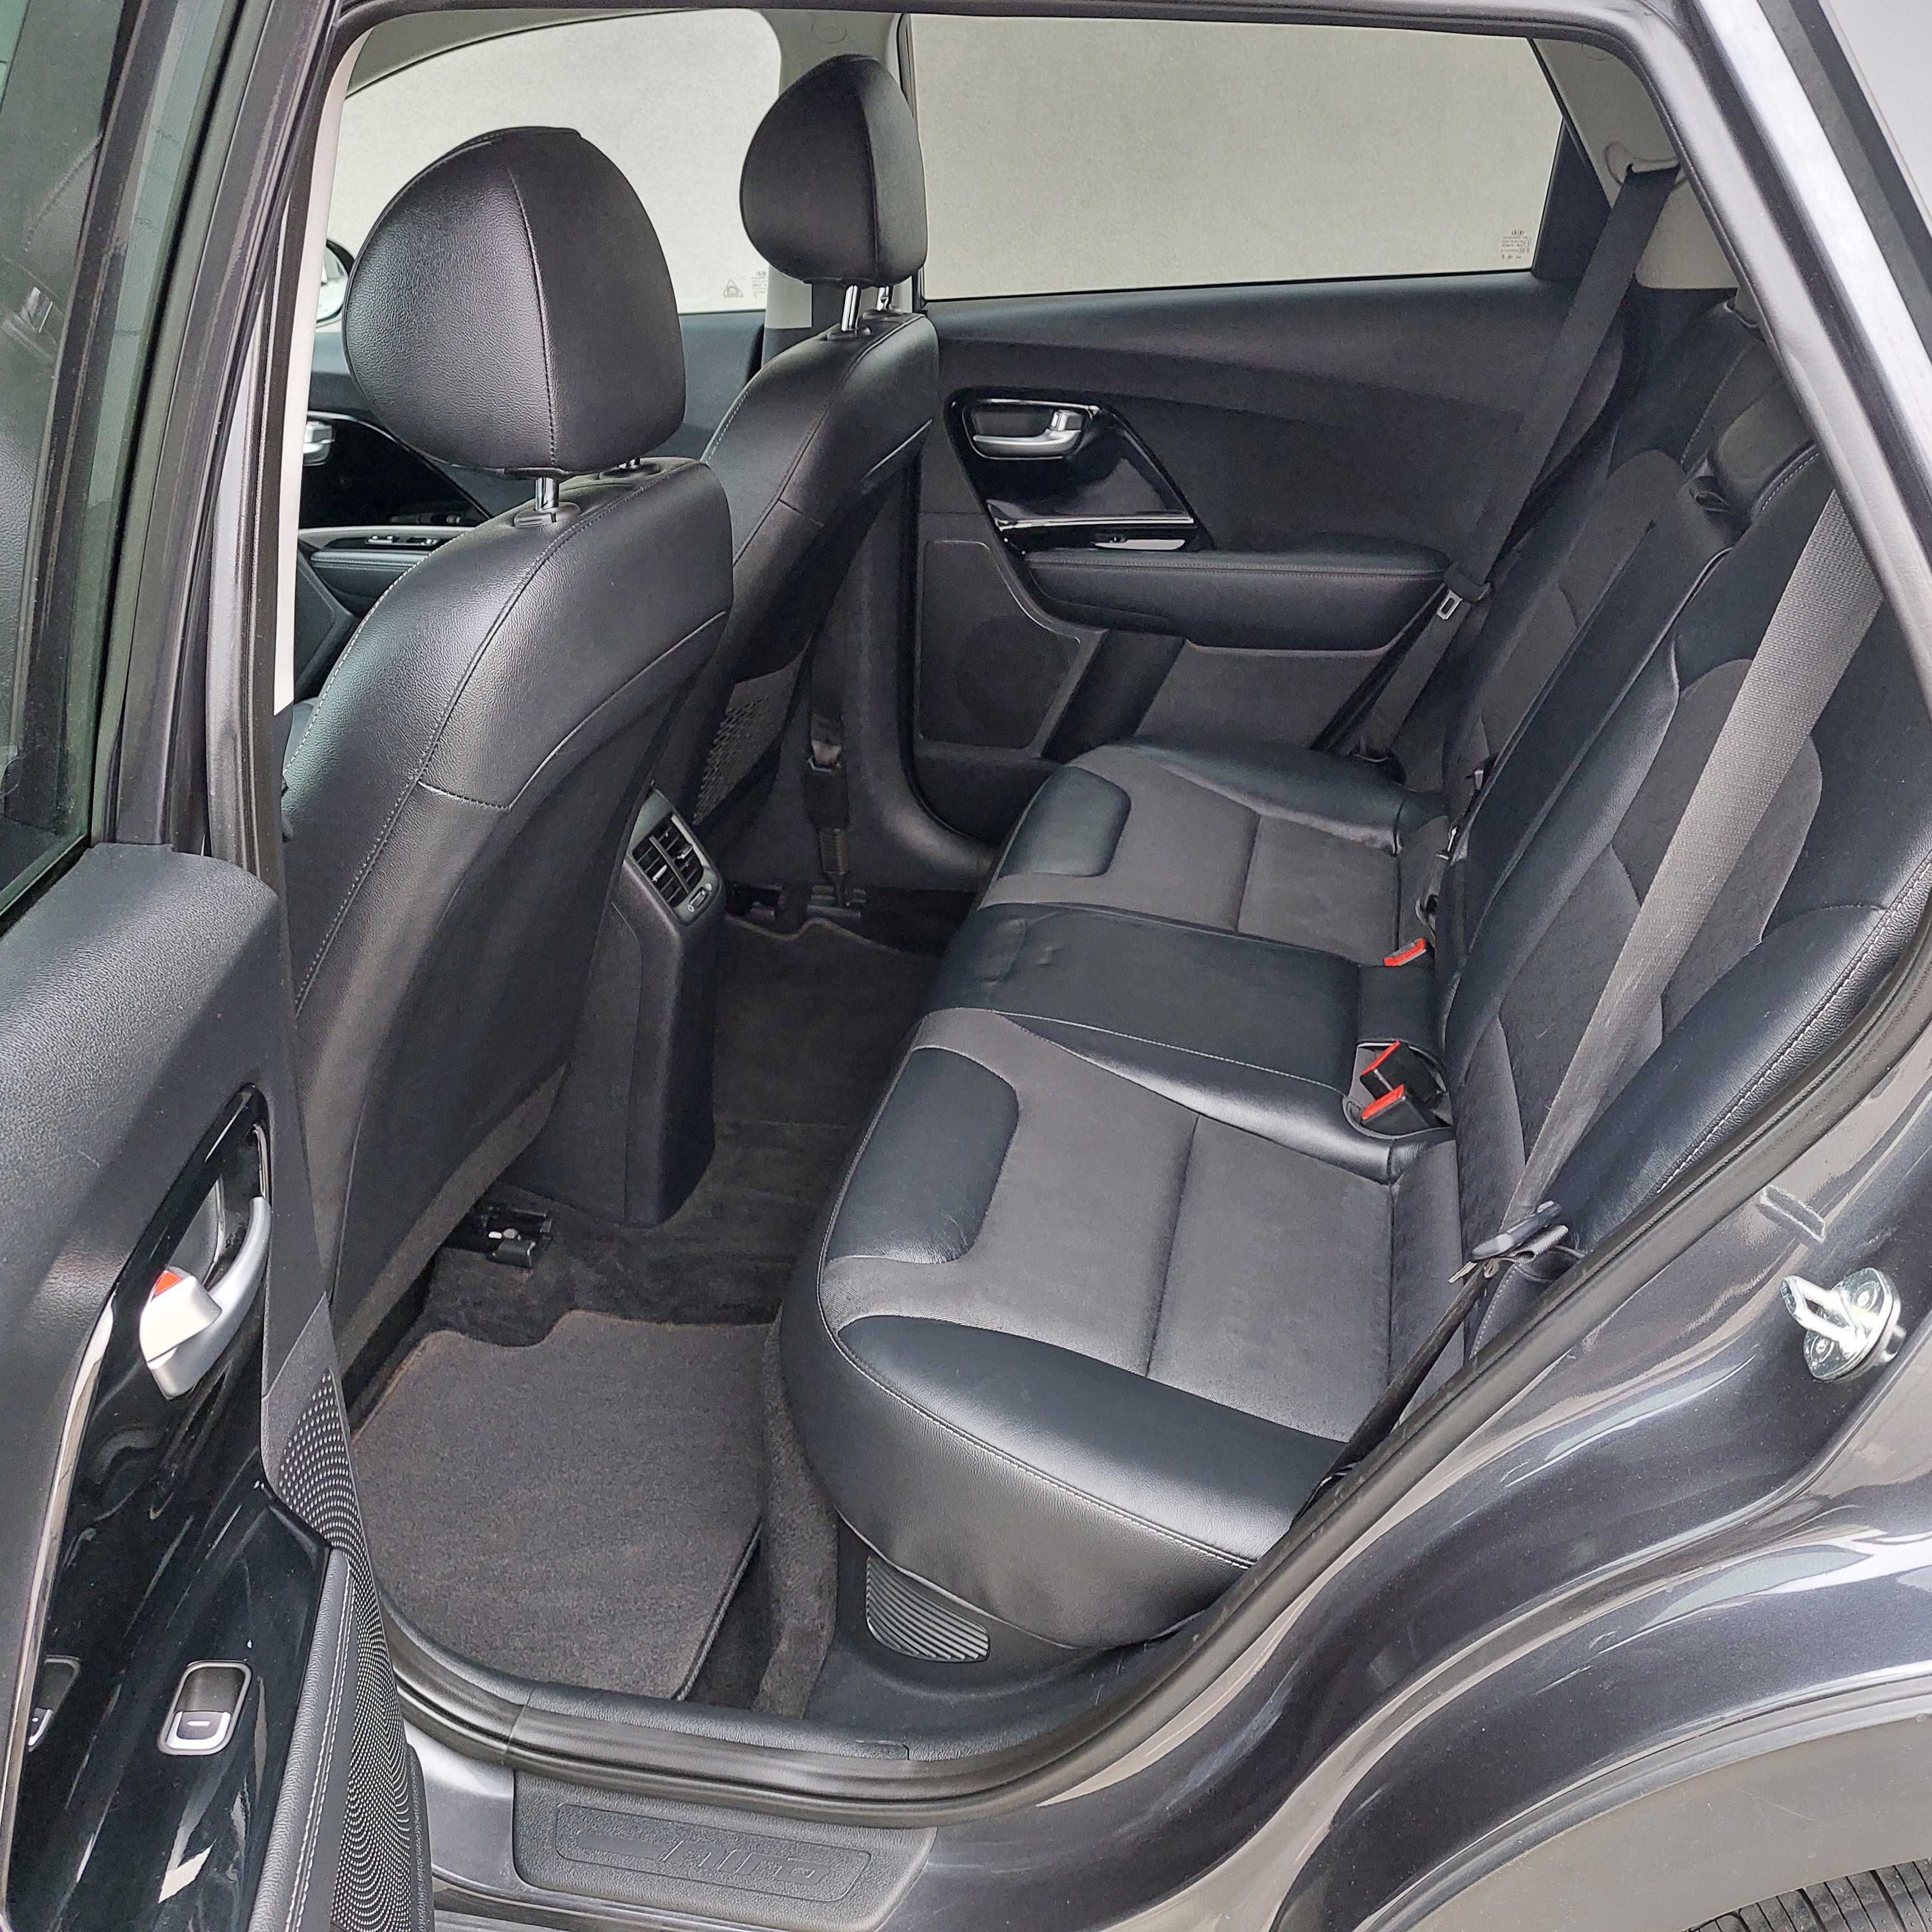 Автомобіль Kia Niro TOURING гібрийд, 2018 рік випуску, ідеальне авто